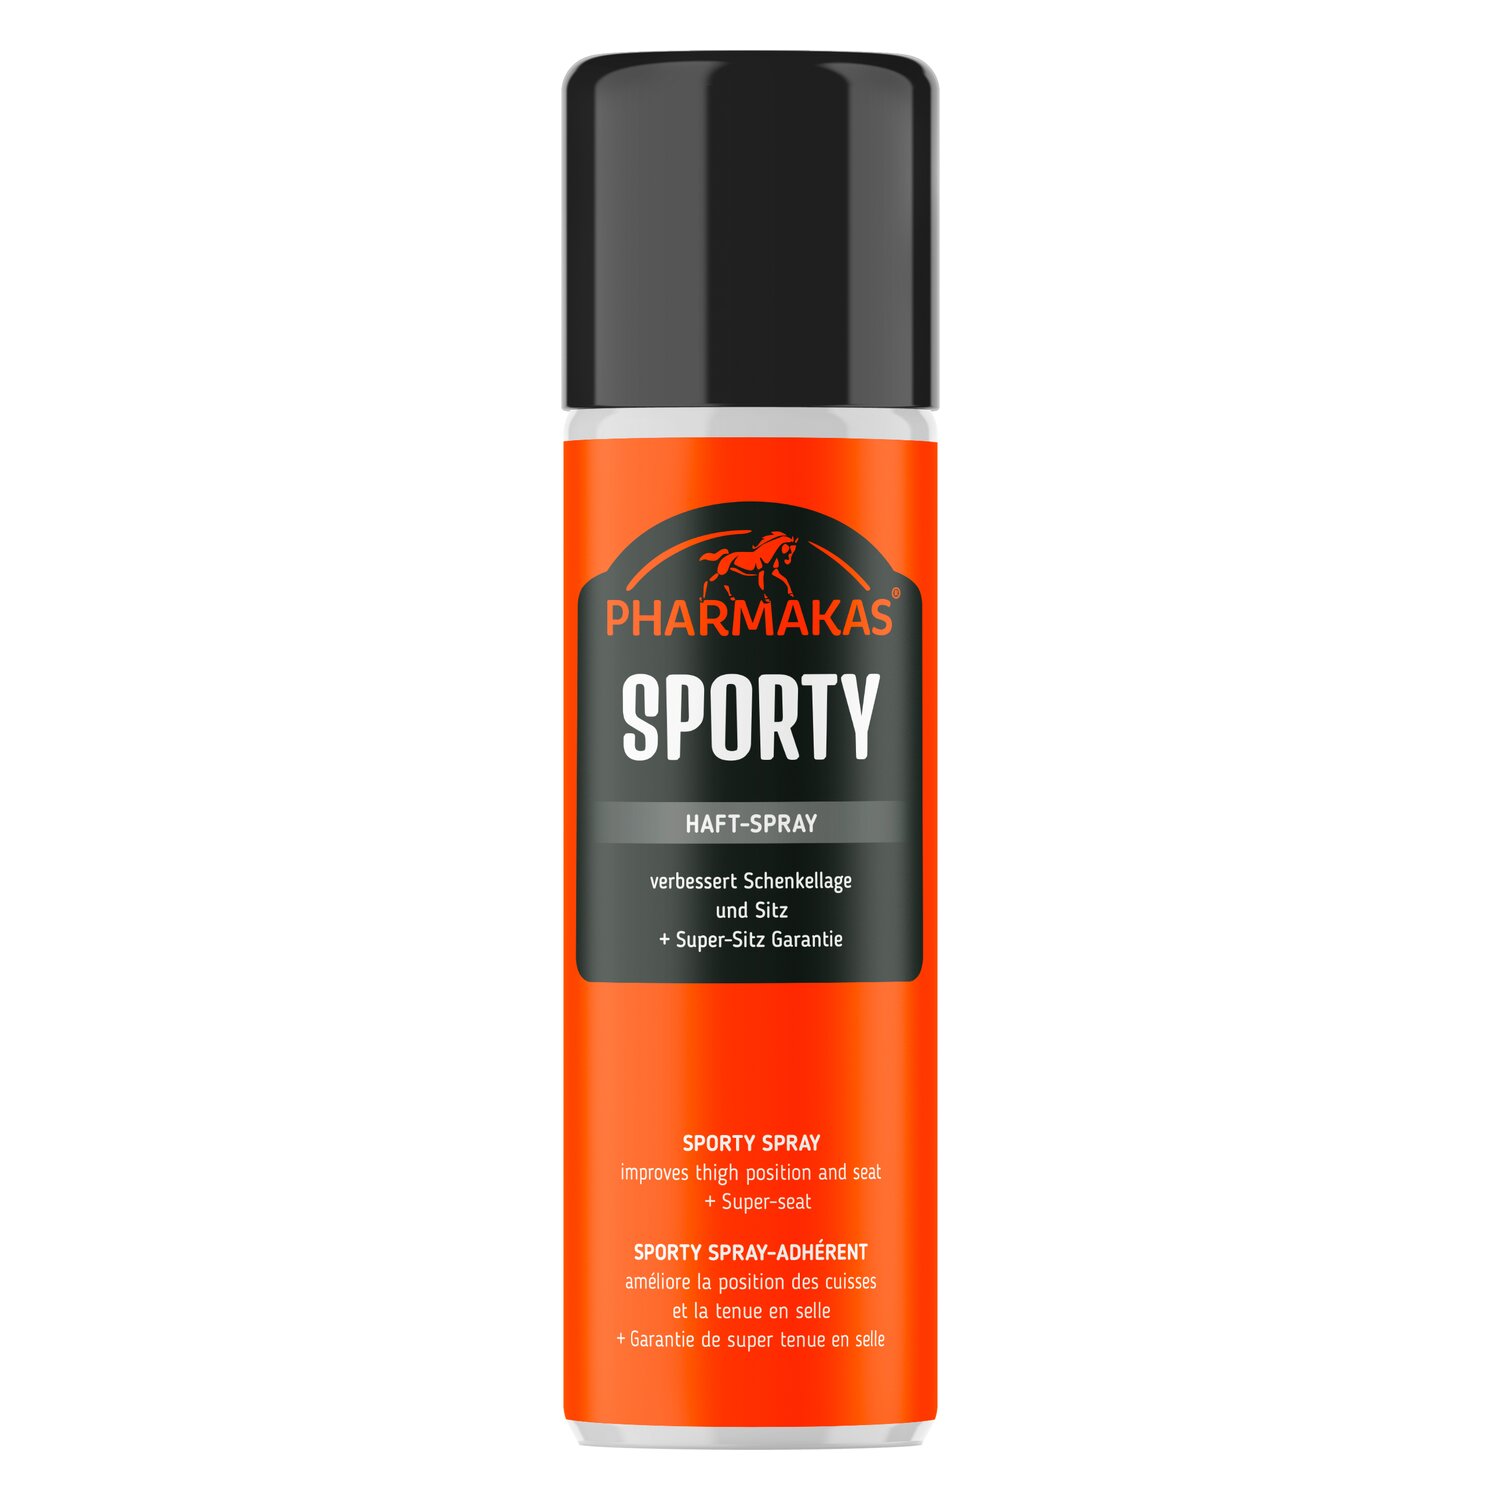 PHARMAKAS Sporty Haft-Spray 200 ml